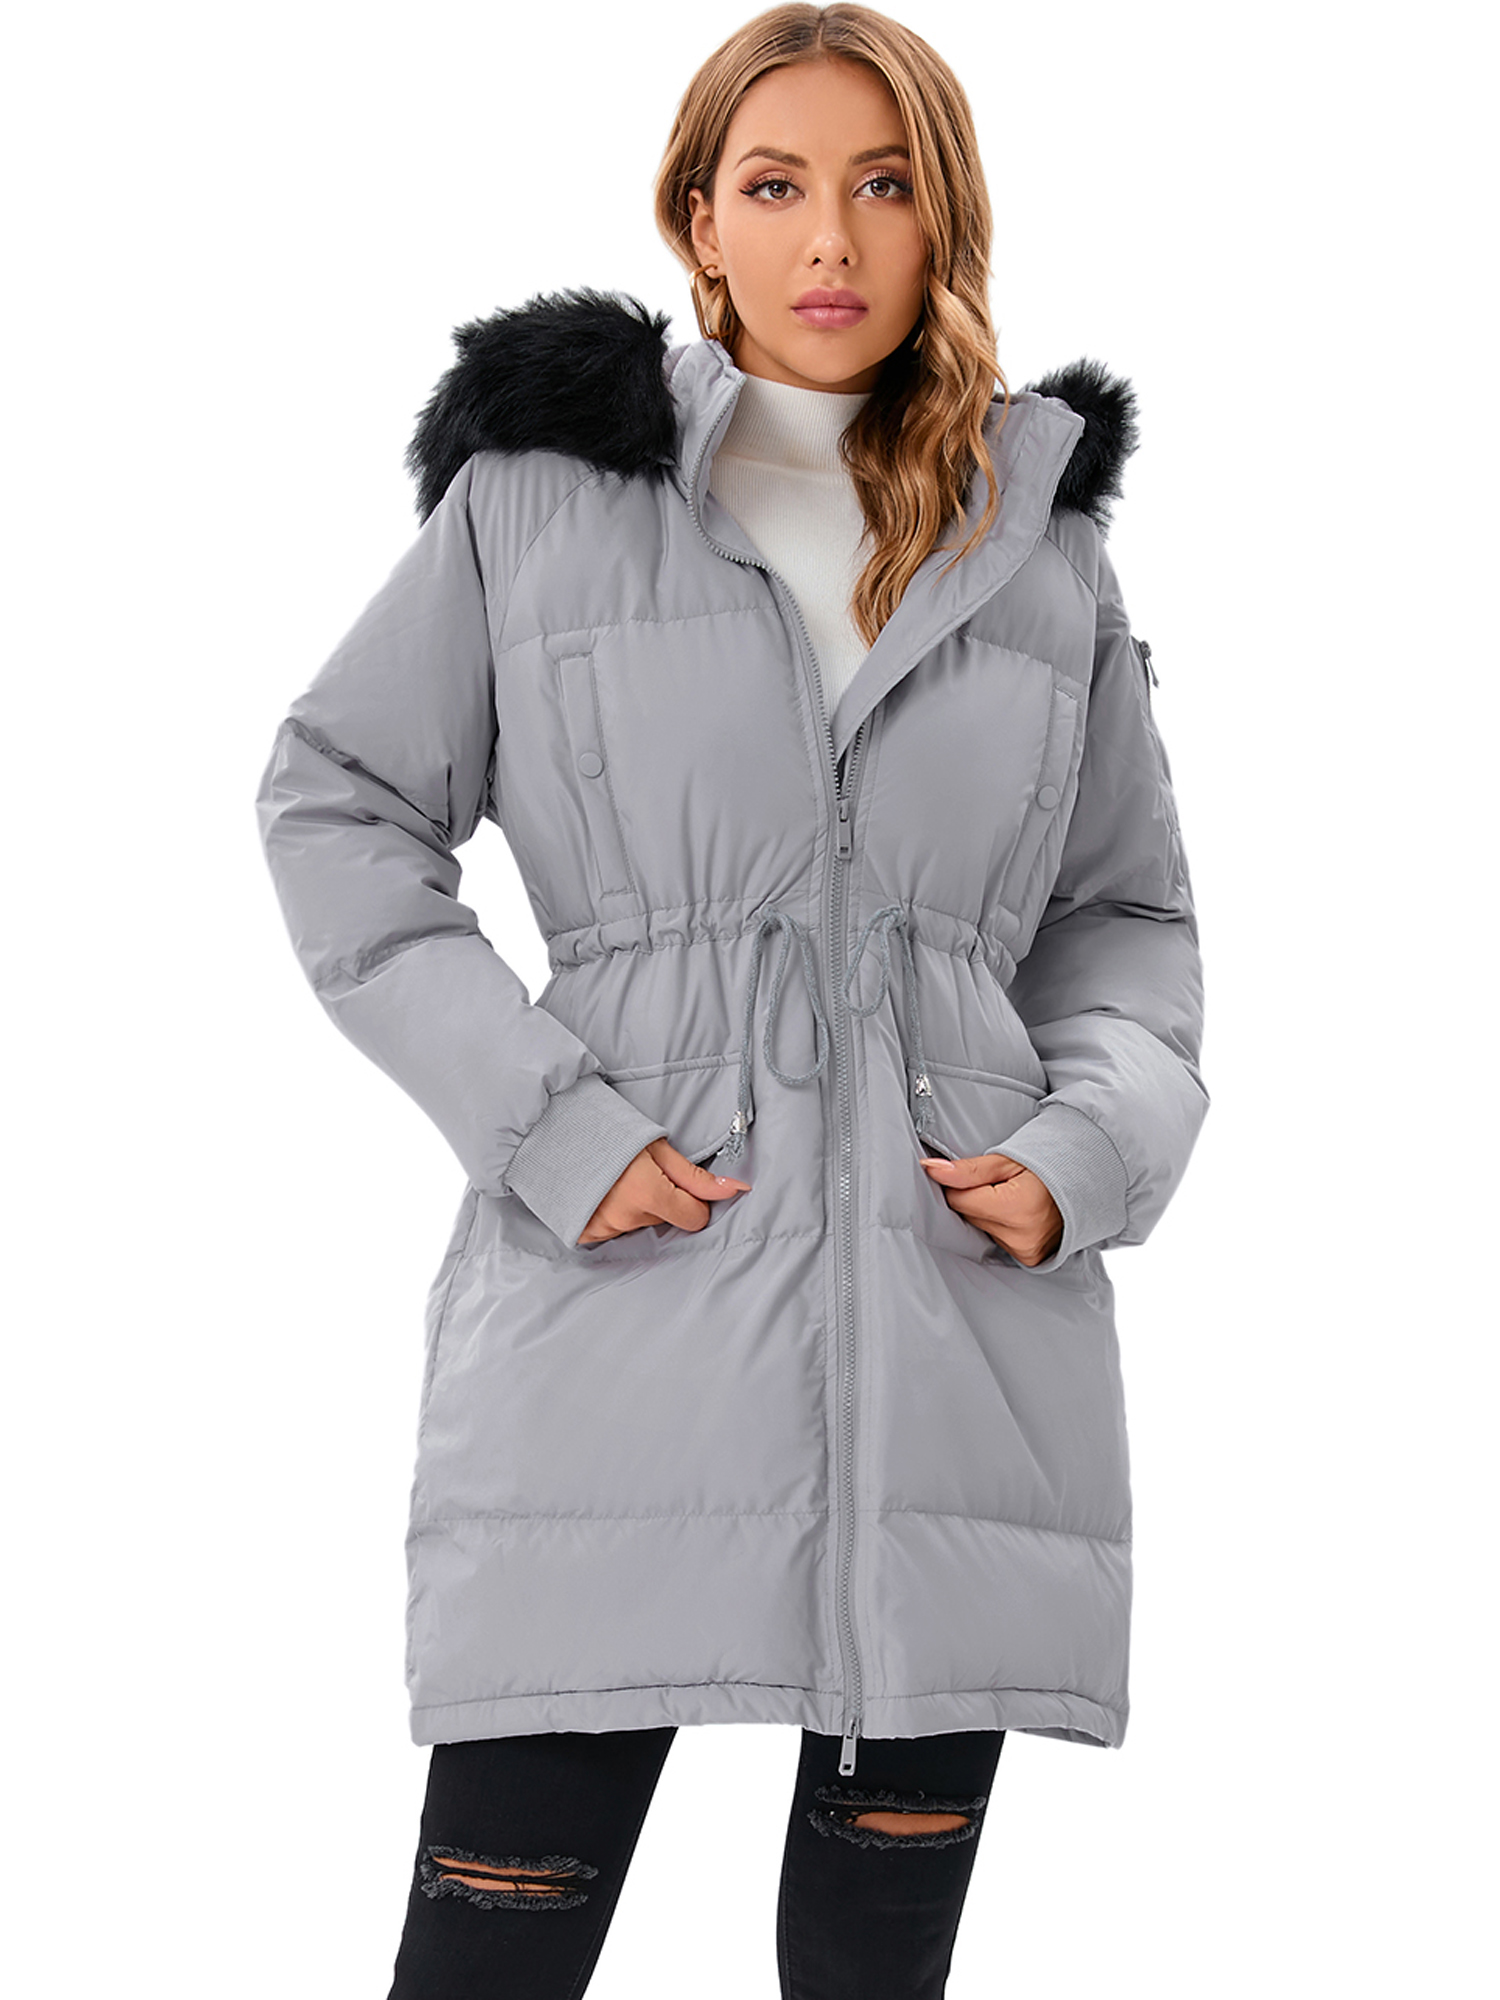 LELINTA Women's Long Winter Warm Puffer Coat Vegan Down Jacket Waterproof Rain Zip Parka, Camouflage - image 5 of 7